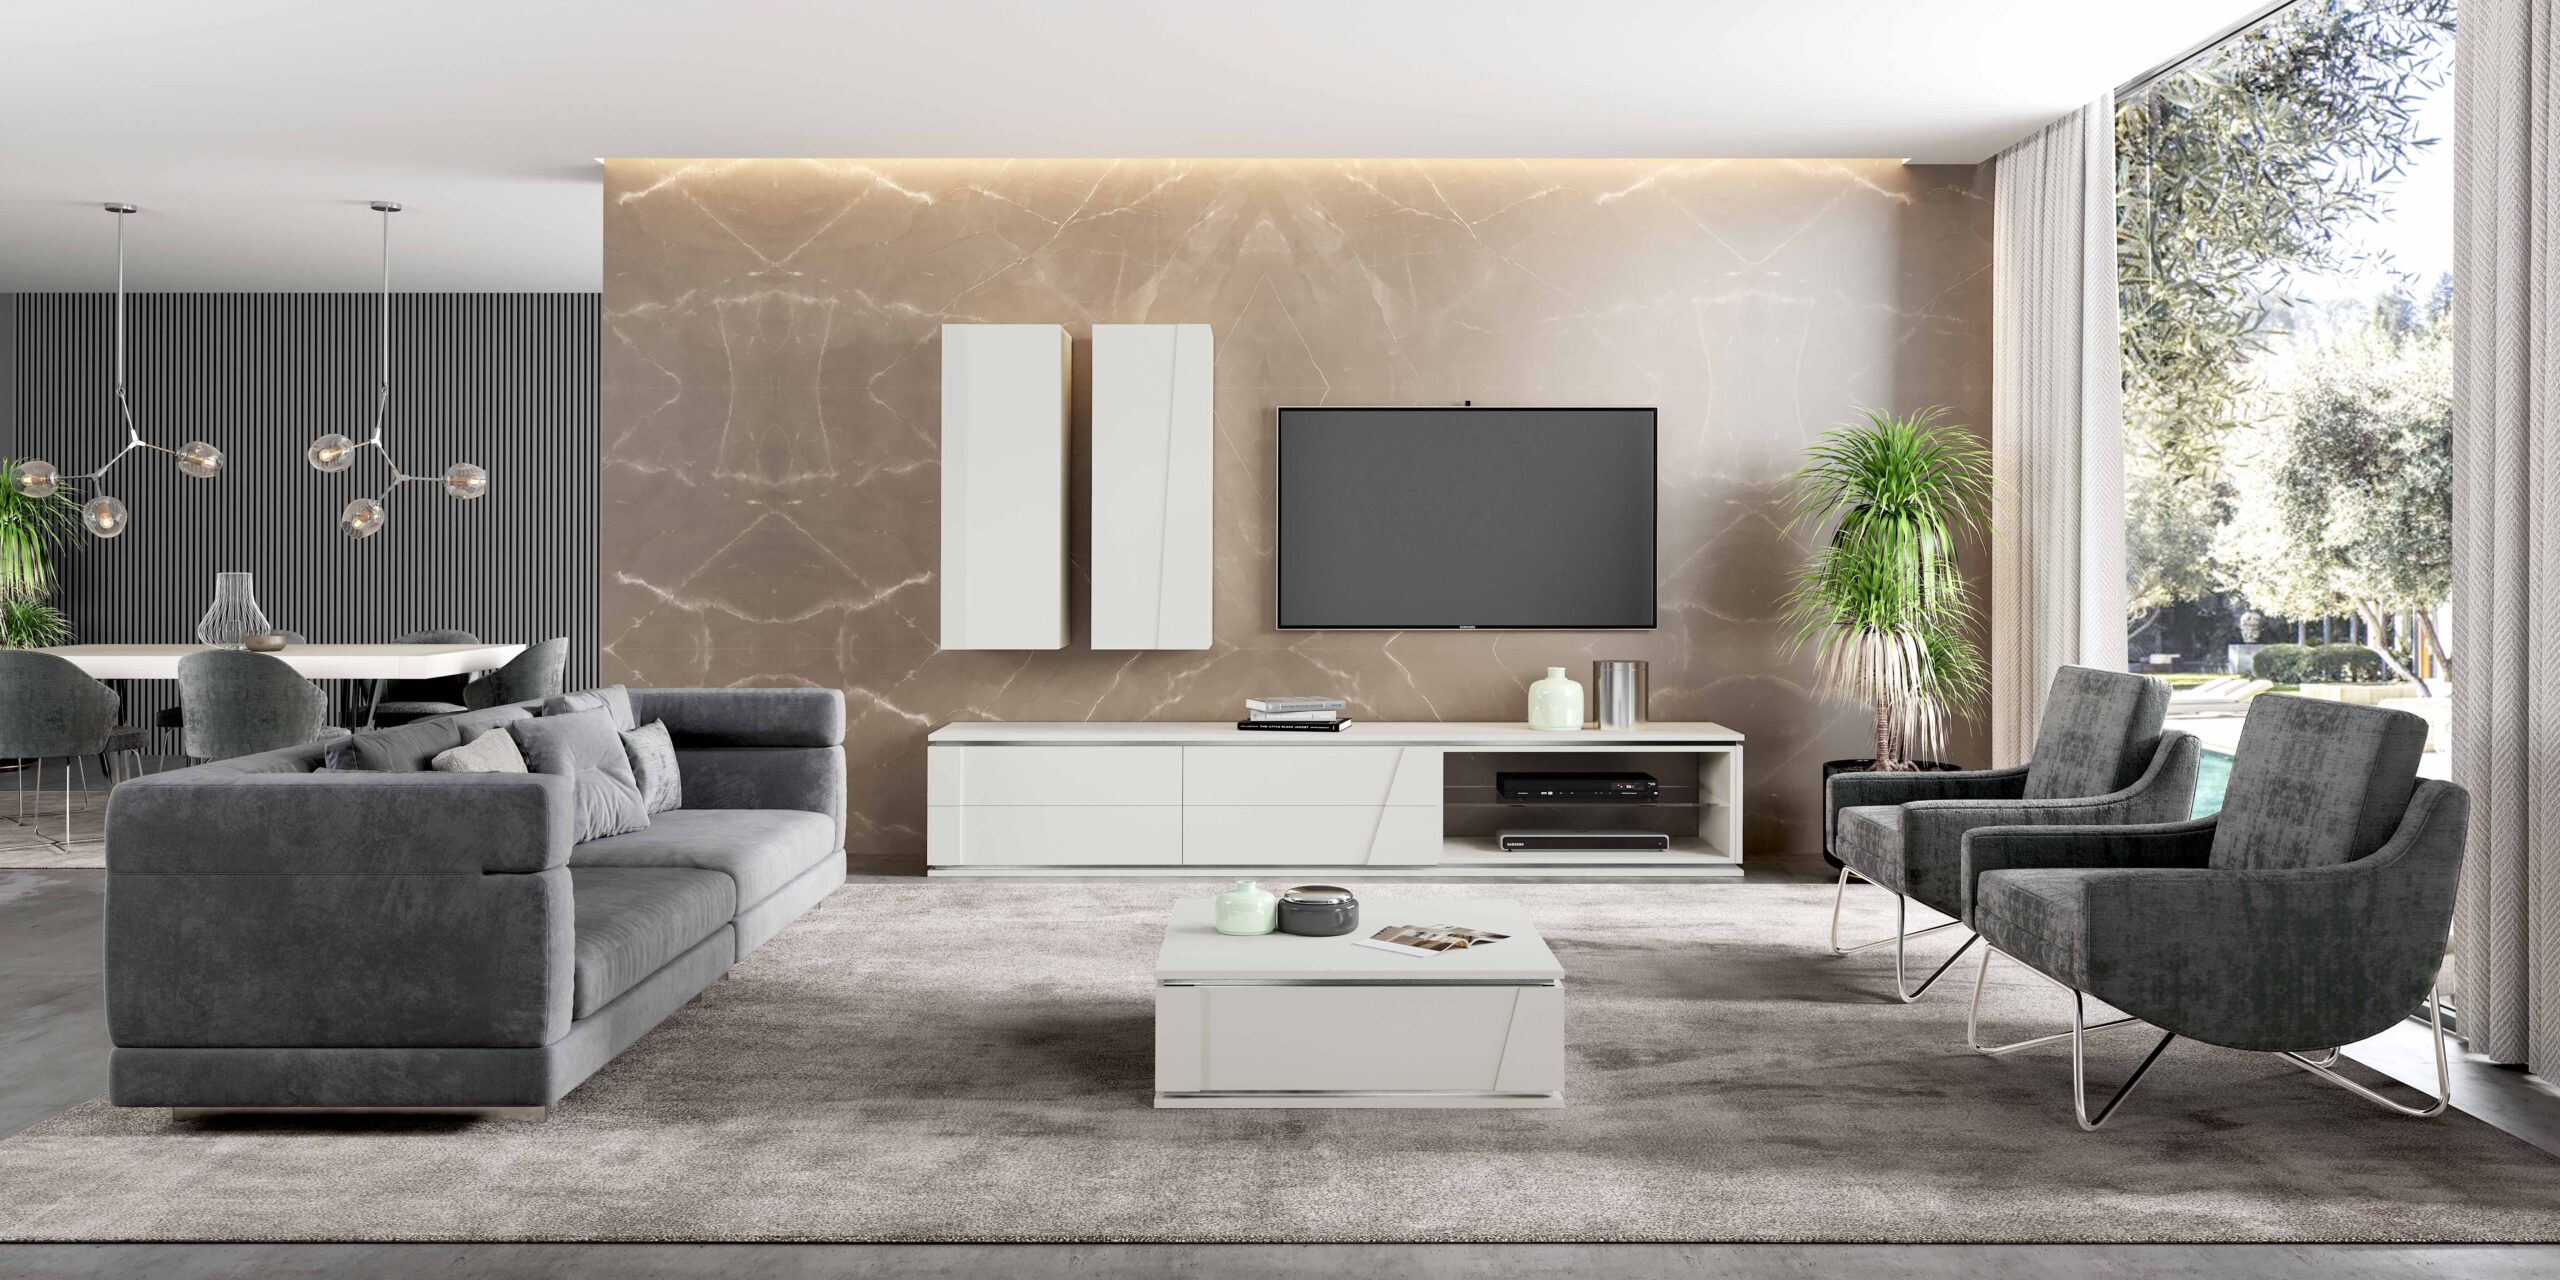 Sala de estar moderna com conjunto de sofás e móvel de tv